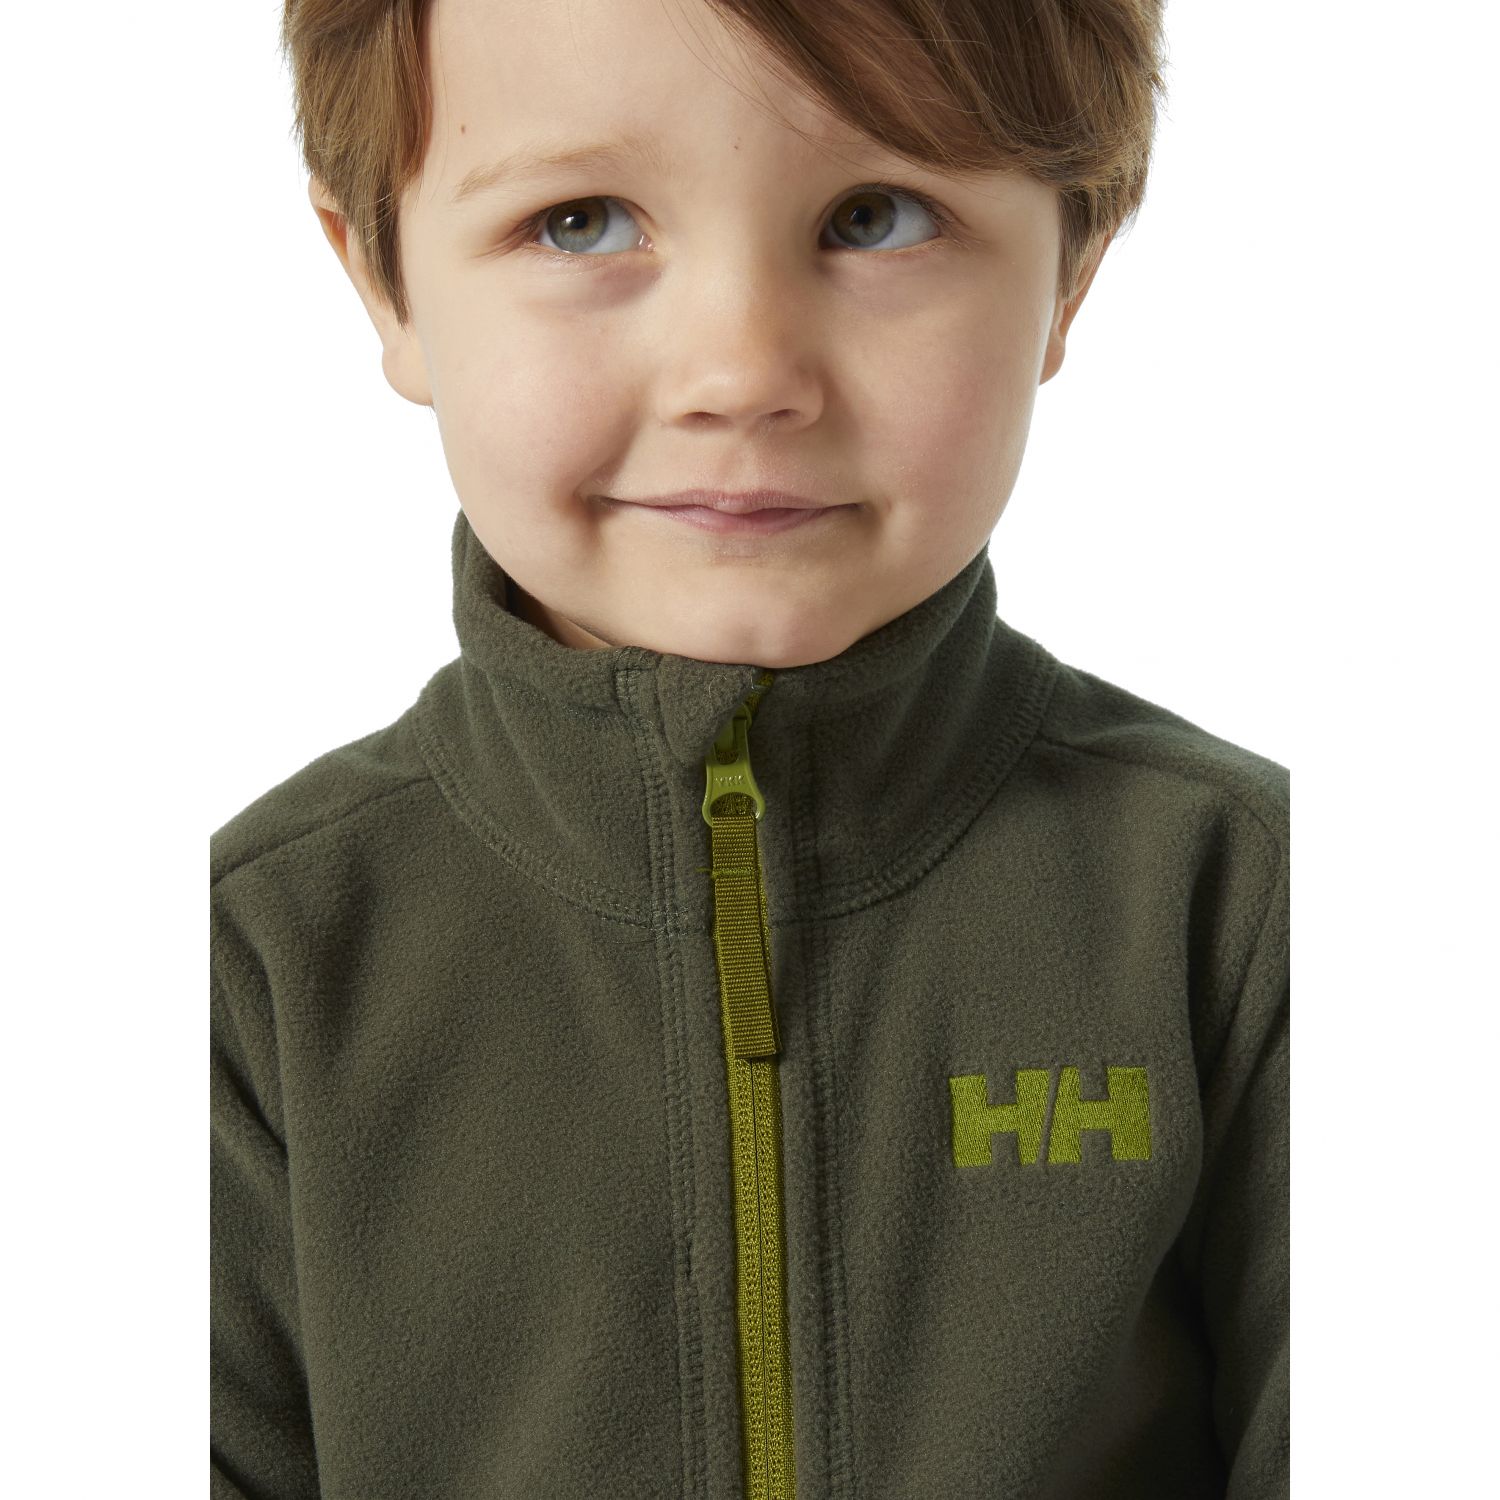 Helly Hansen Daybreaker 2.0 fleece jacket, kids, utility green